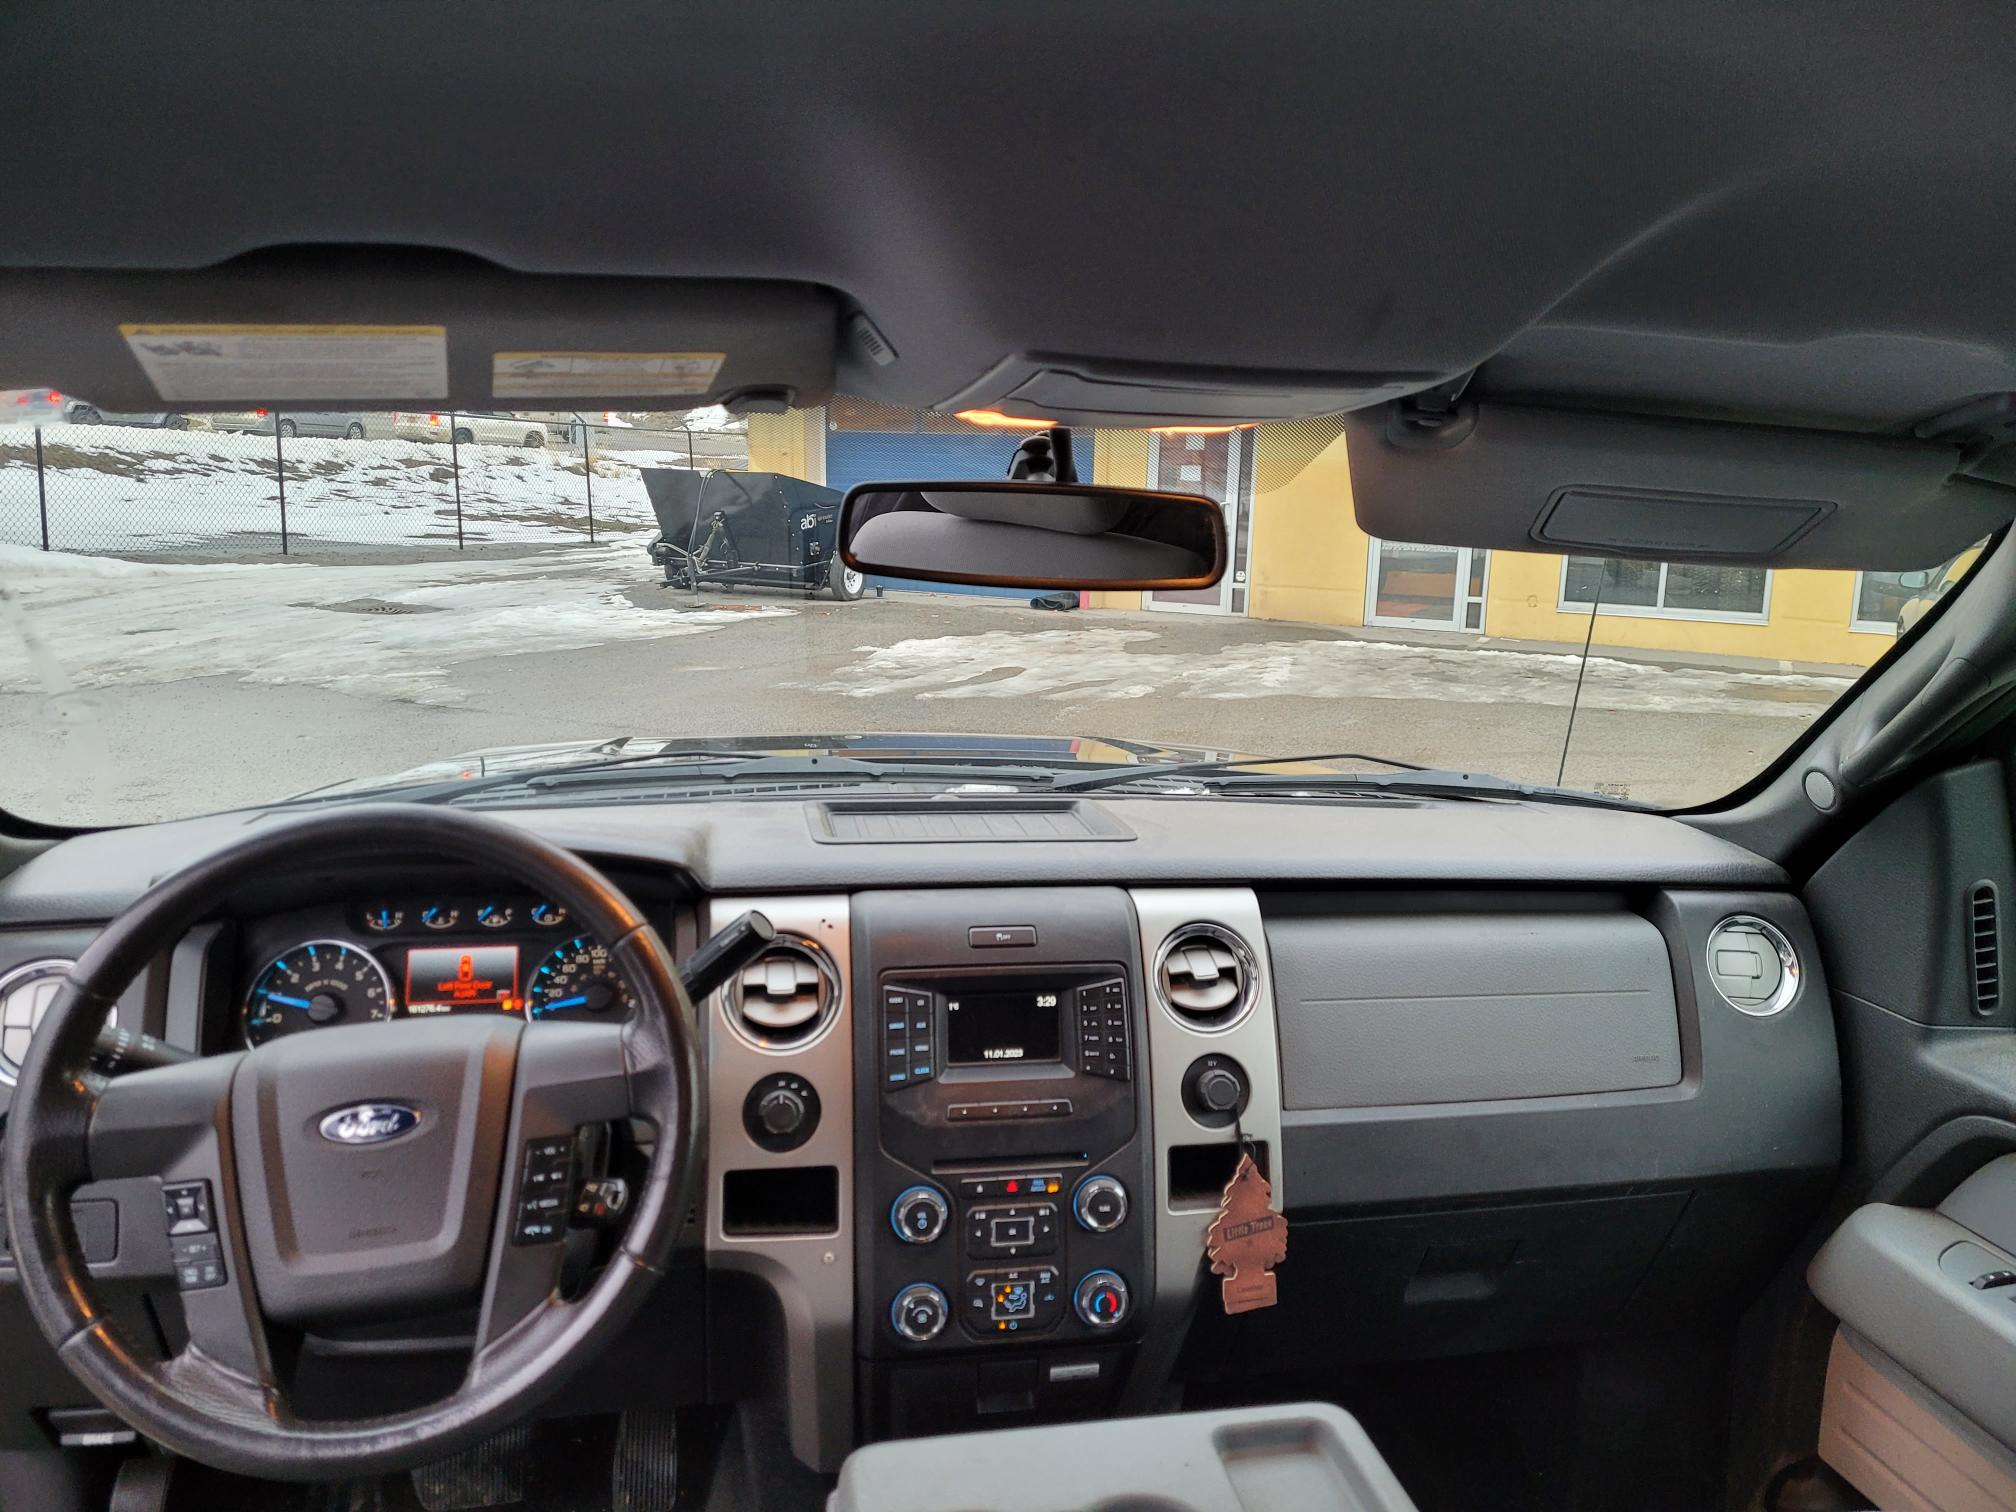 2014 Ford F150 XLT #B-KEL-0701 Located in Kelowna